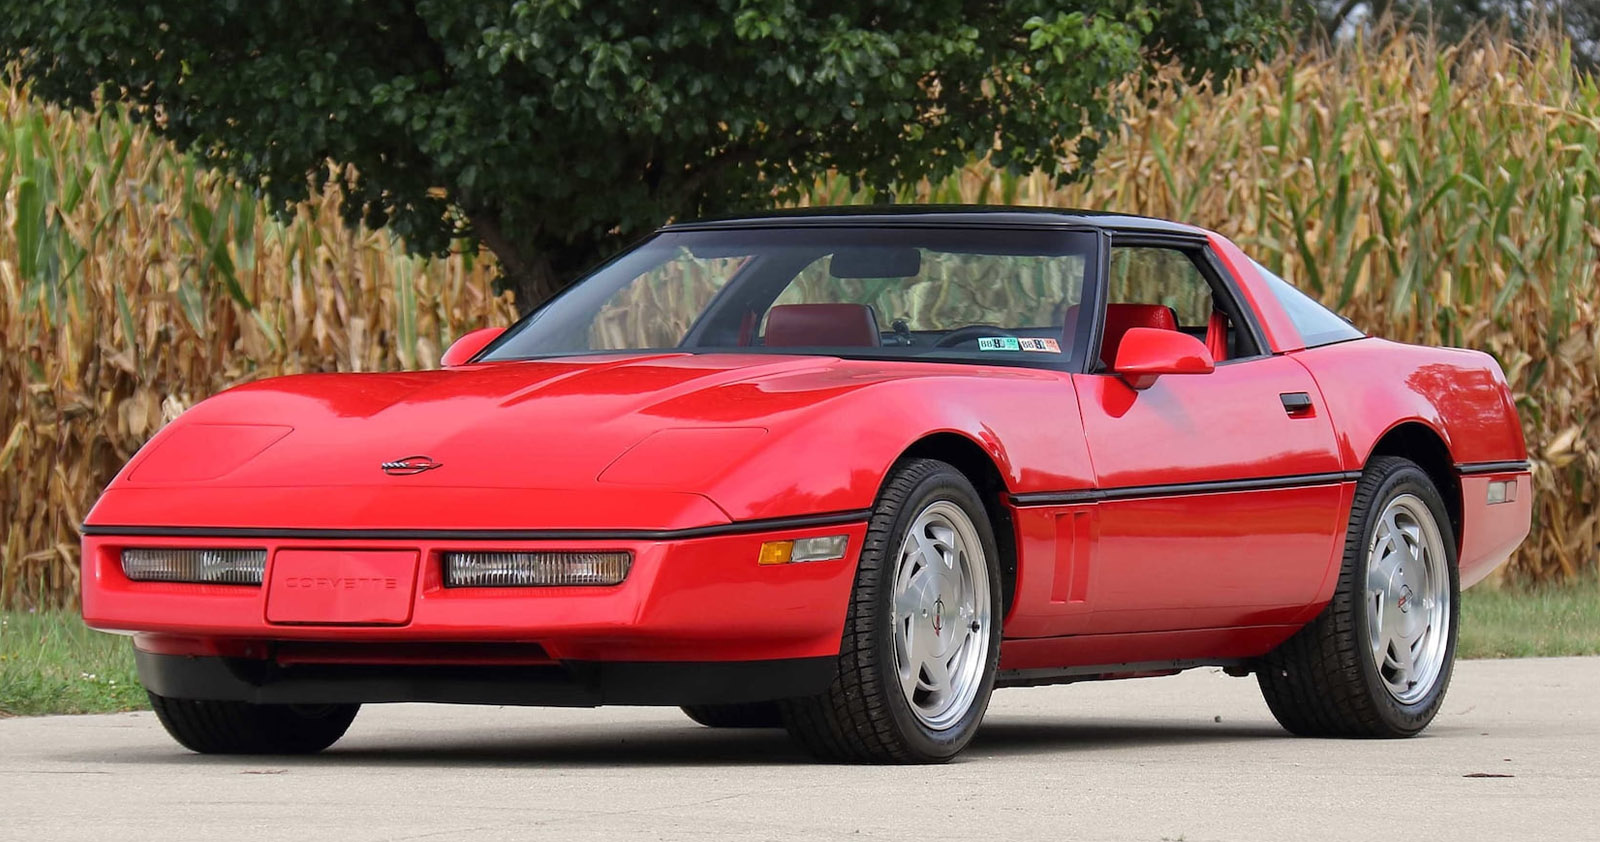 1988 red C4 Corvette